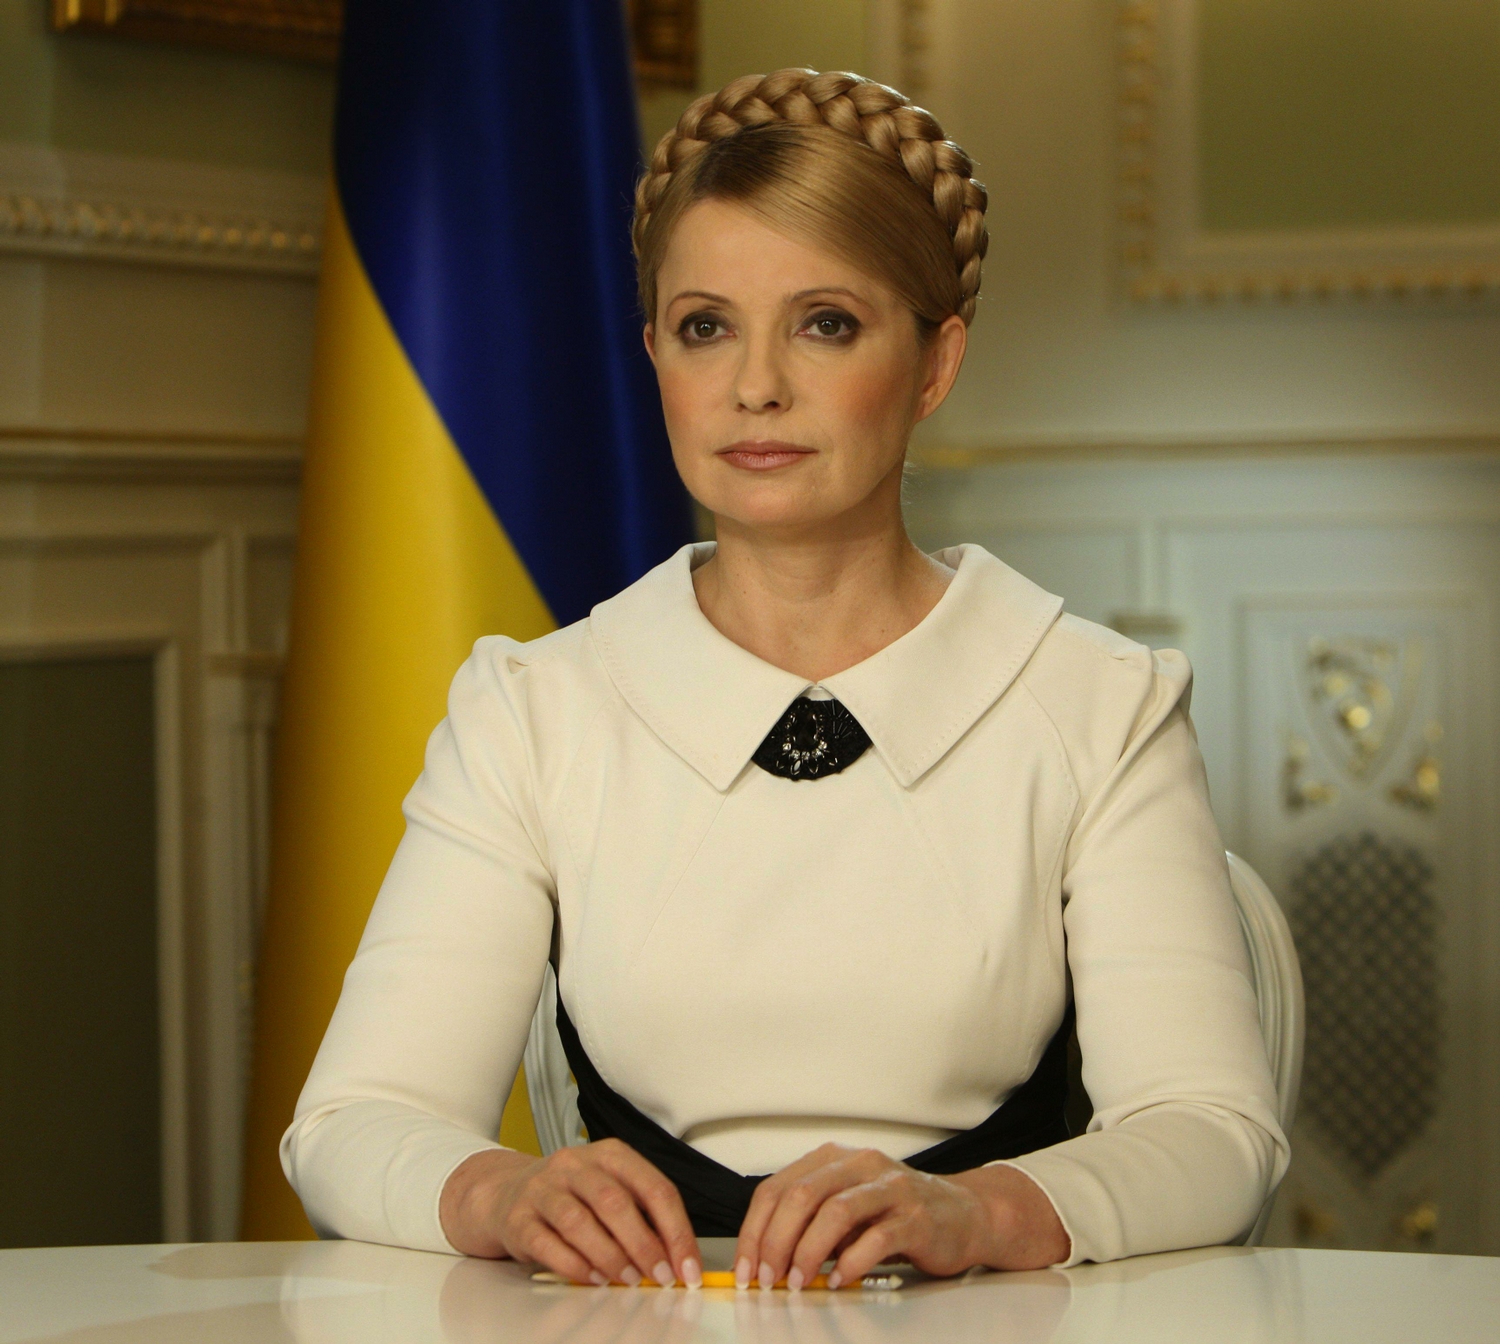 Тимошенко: Против партии "Батькивщина" начались политические  репрессии